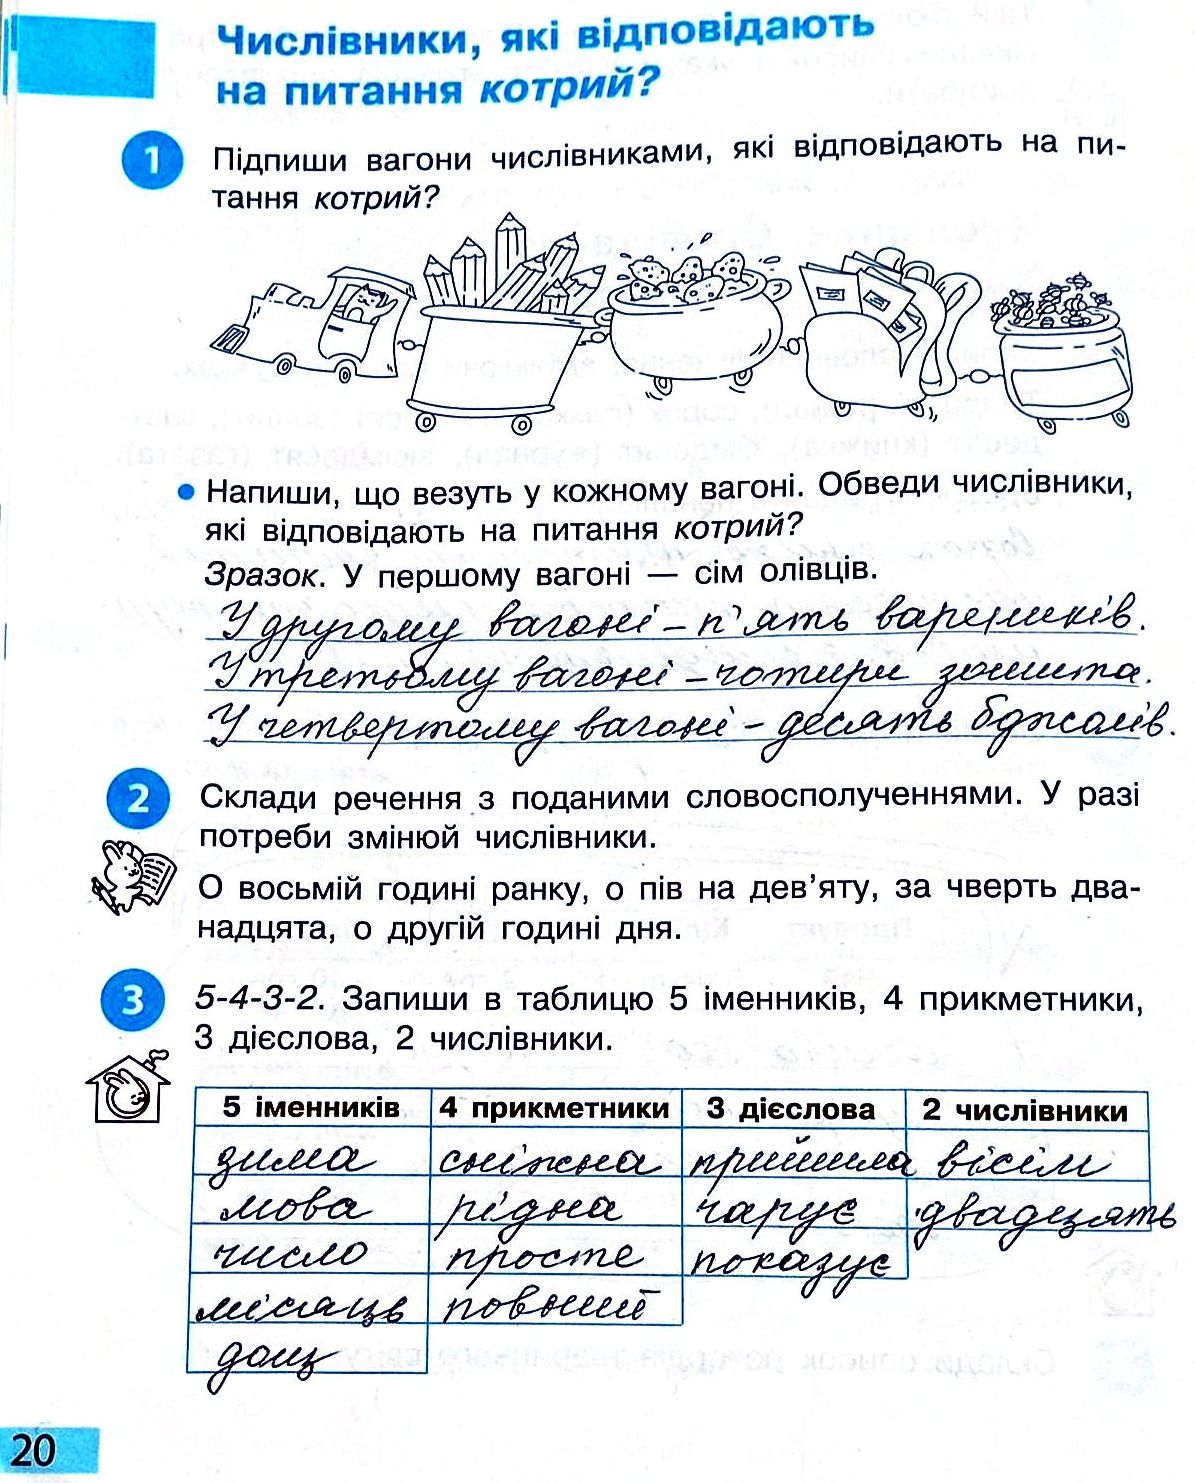 Сторінка 20 частина 2 гдз 3 клас робочий зошит українська мова Большакова